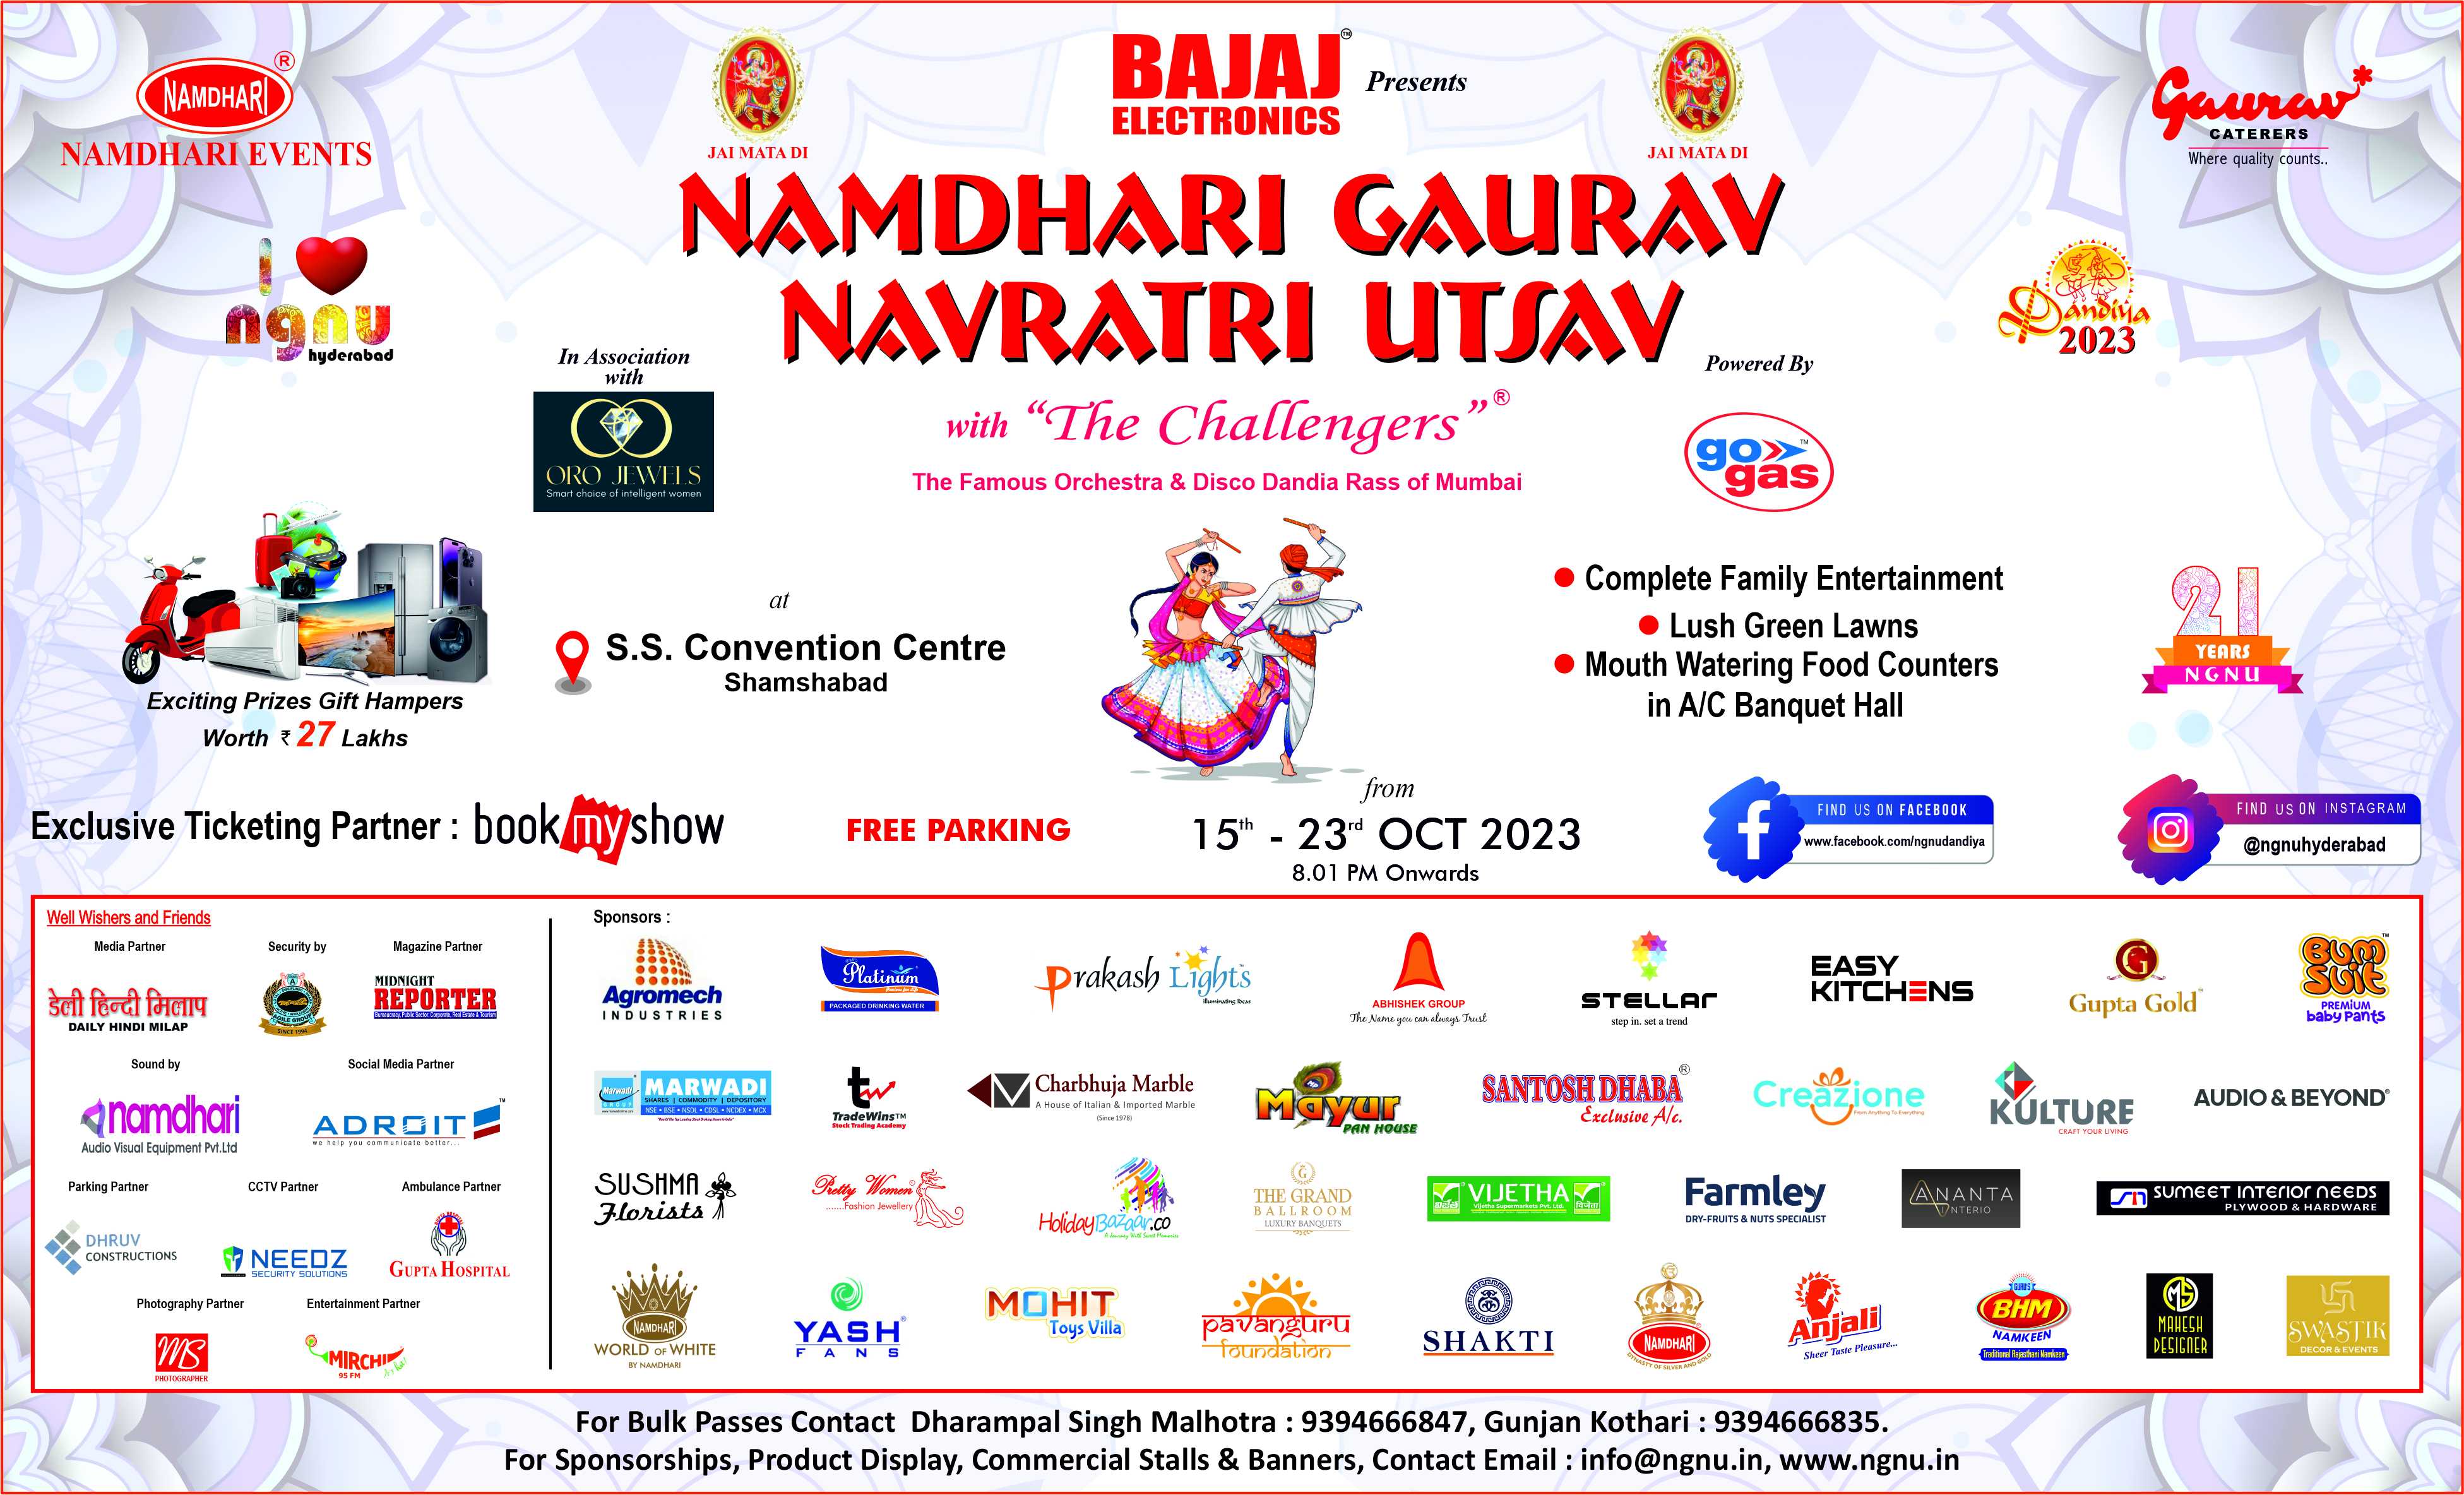 Namdhari Gaurav Navratri Utsav 14-Oct-2023